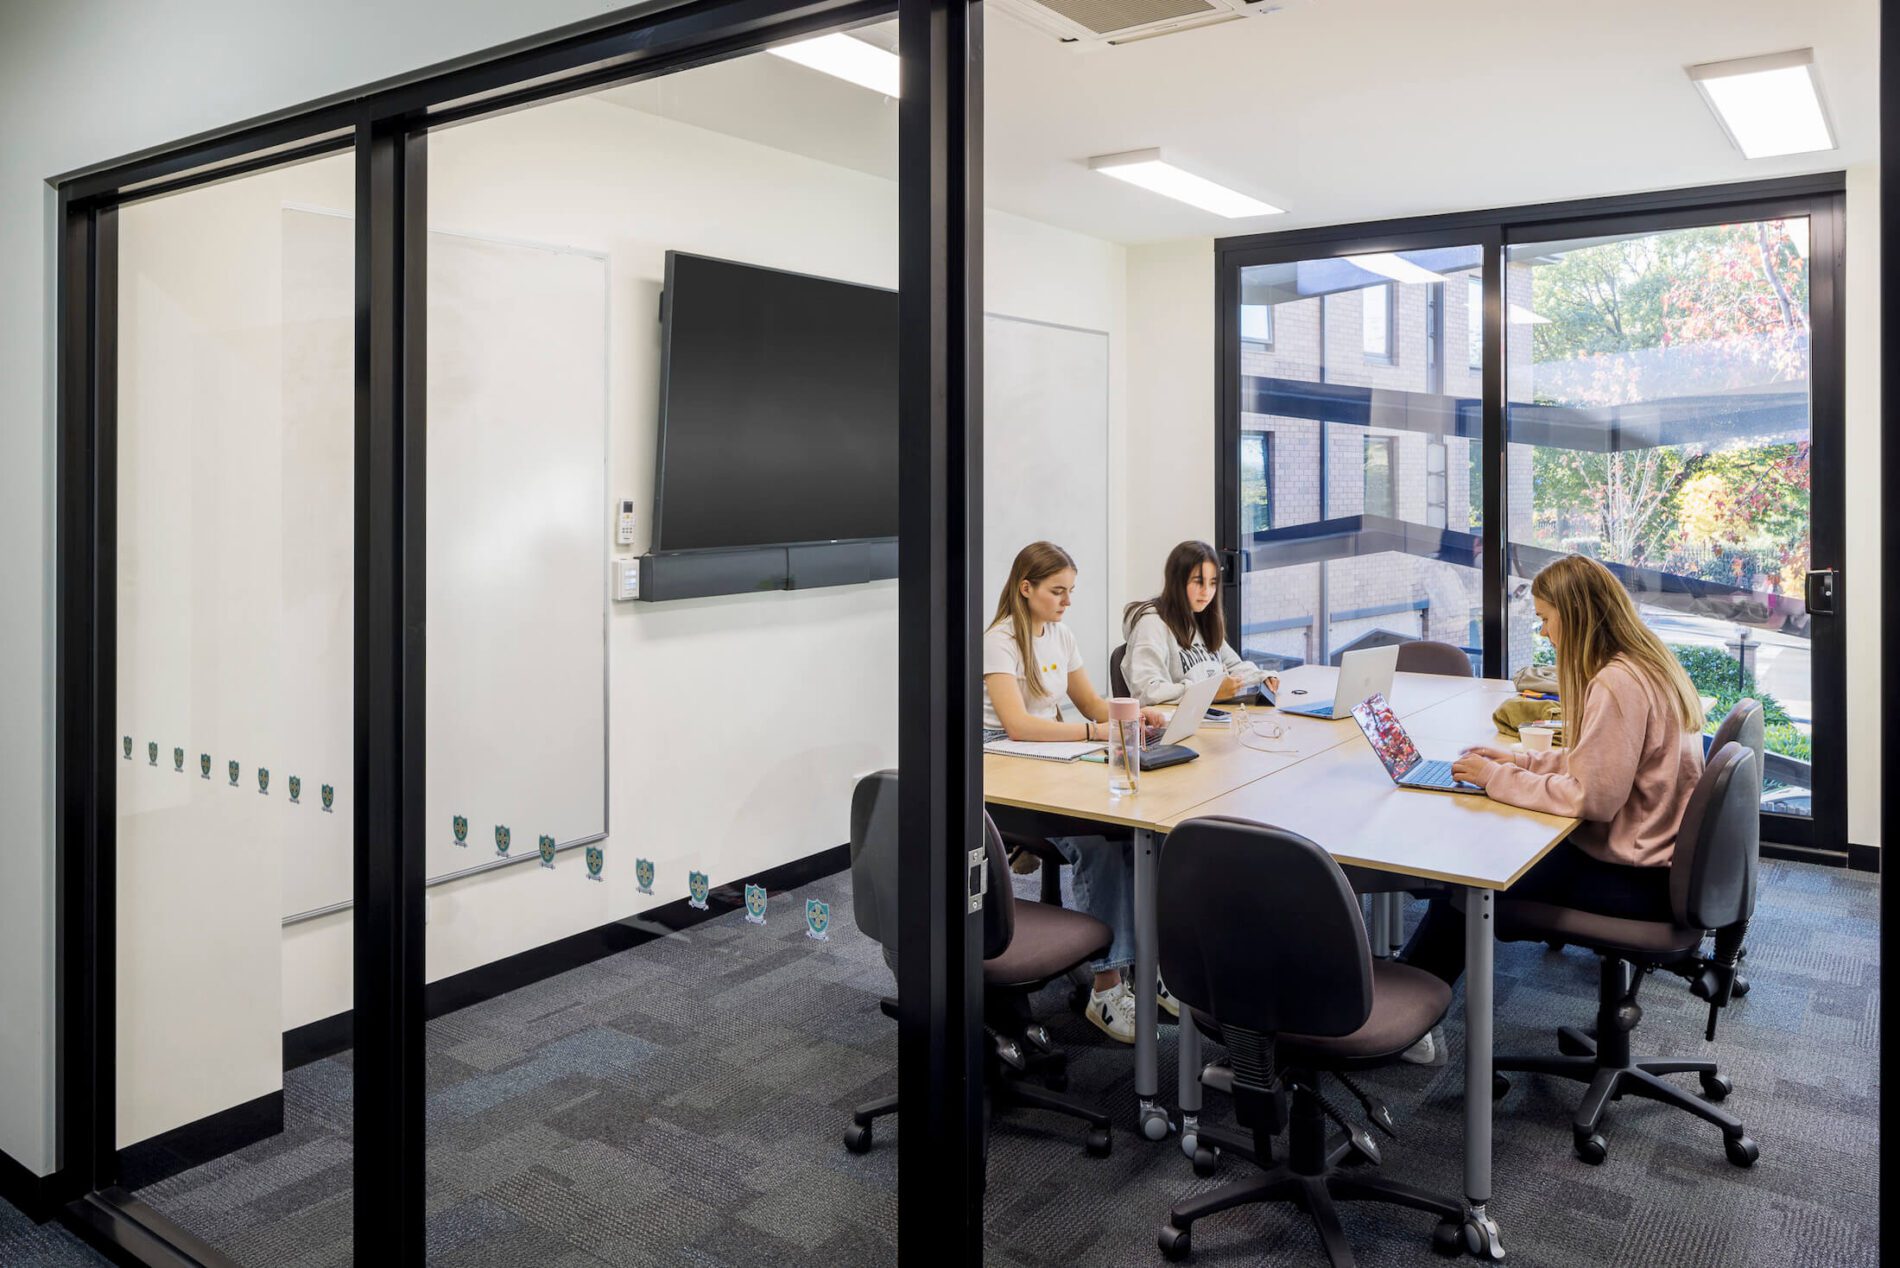 Students sit in meeting room behind windows to internal space, views beyond